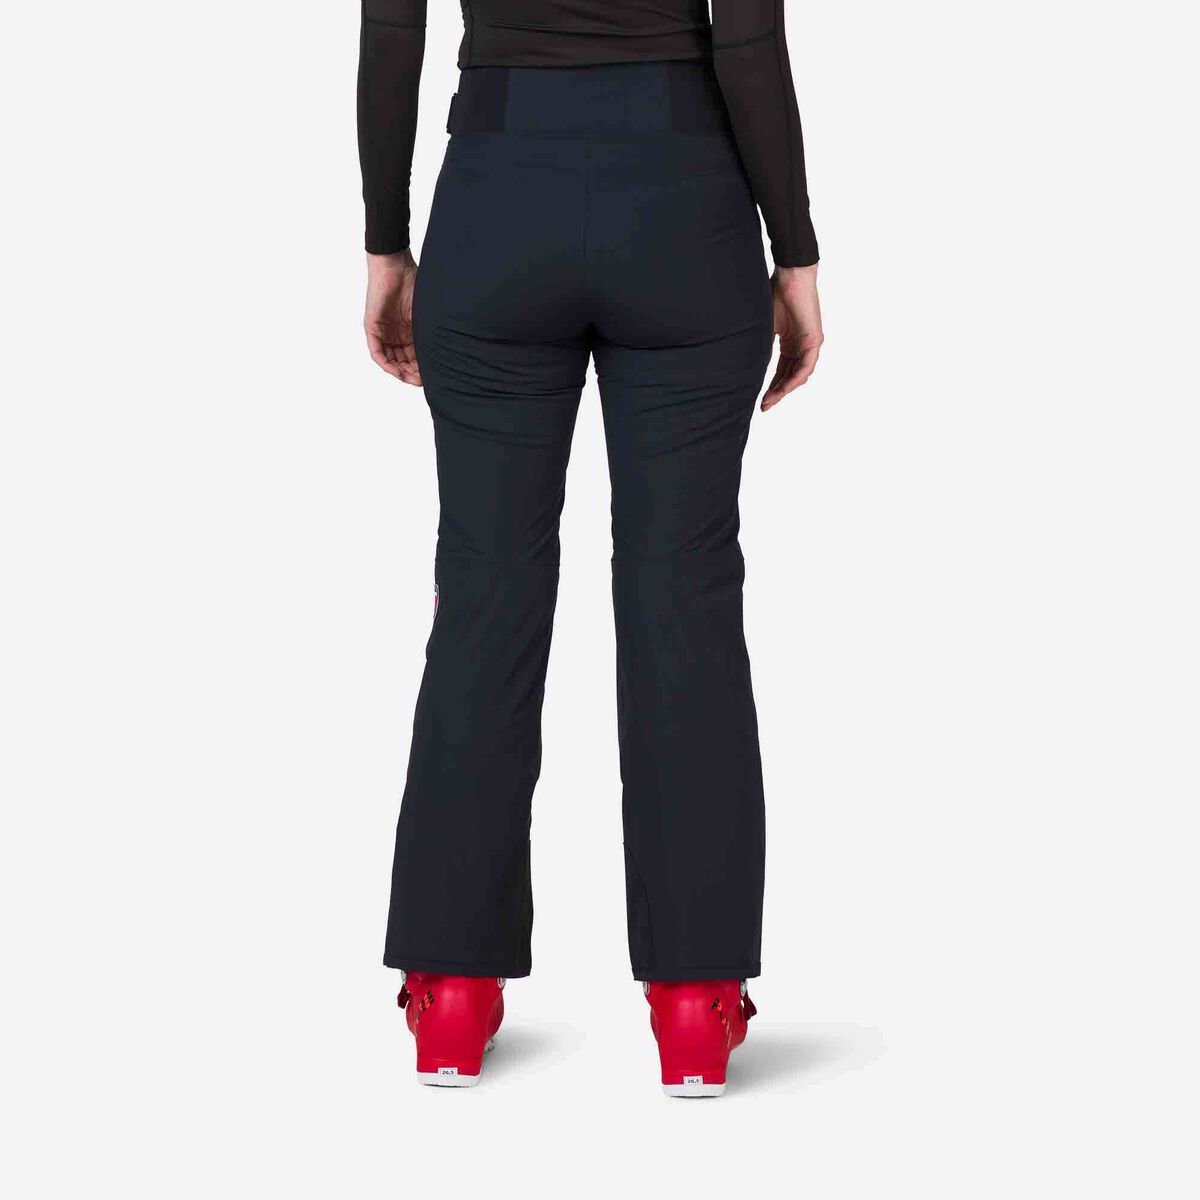 Rossignol Women's Strato Ski Pants Black